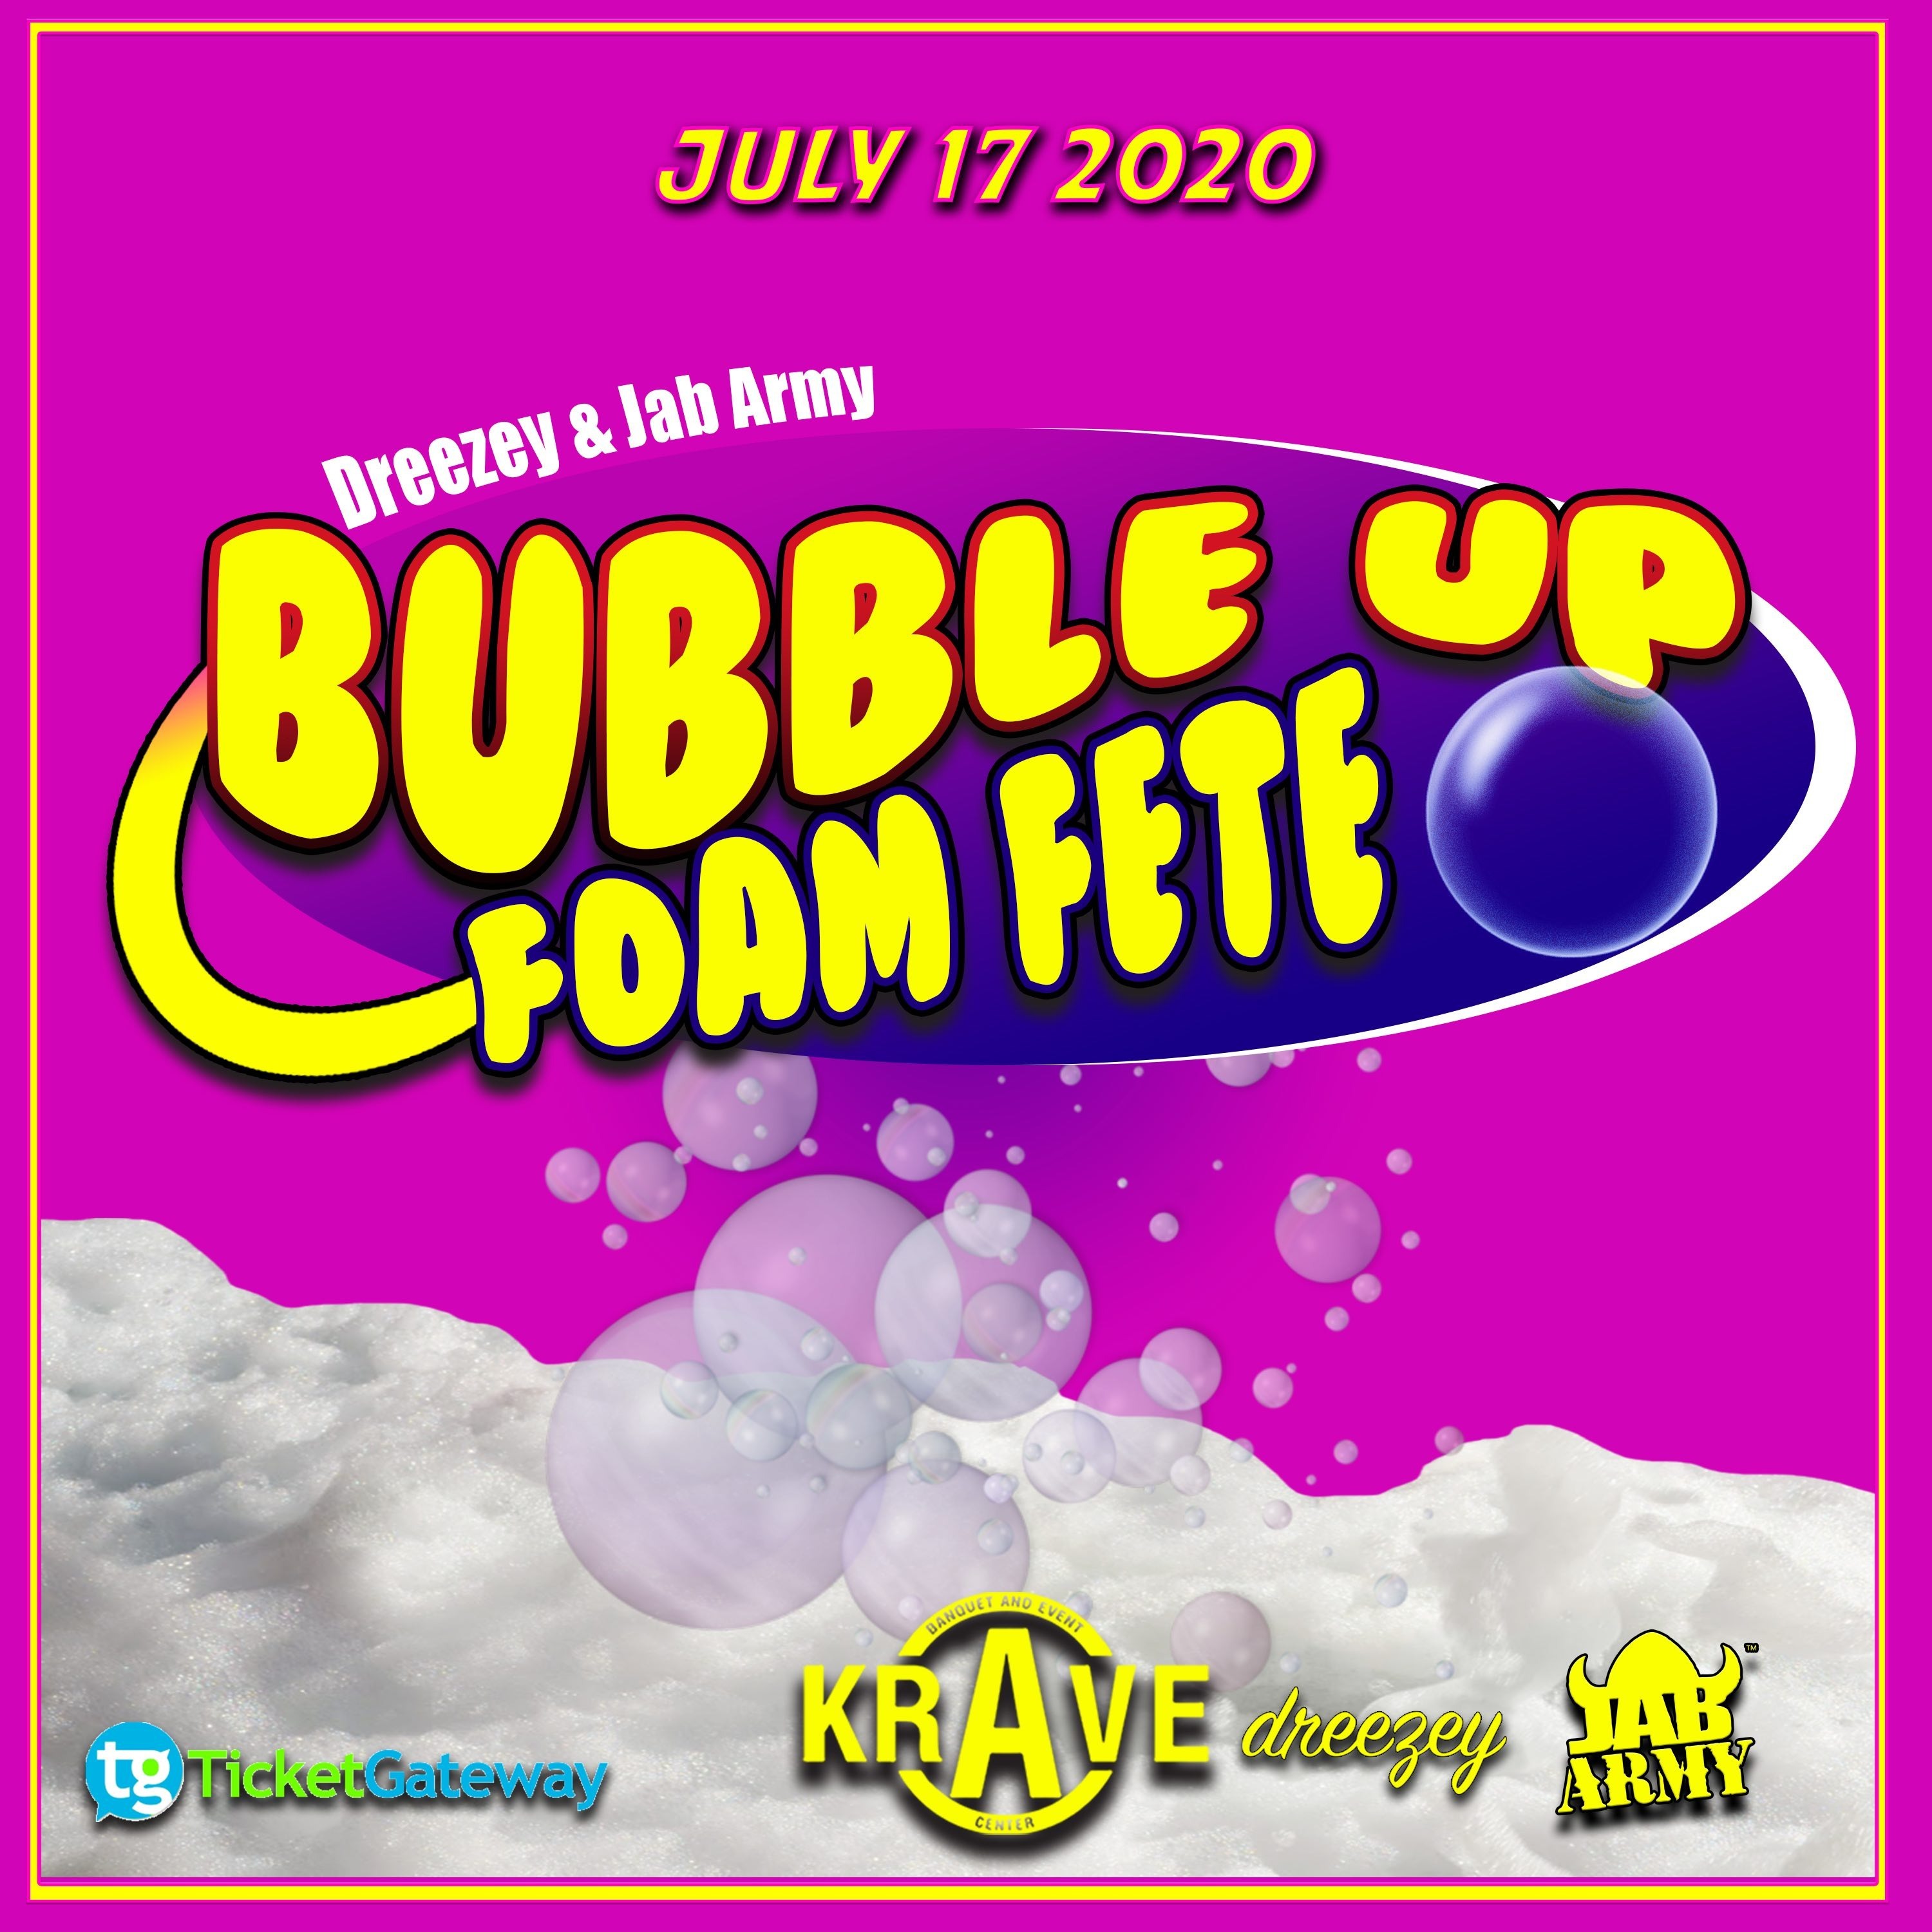 Bubble up Foam Fete @ Krave